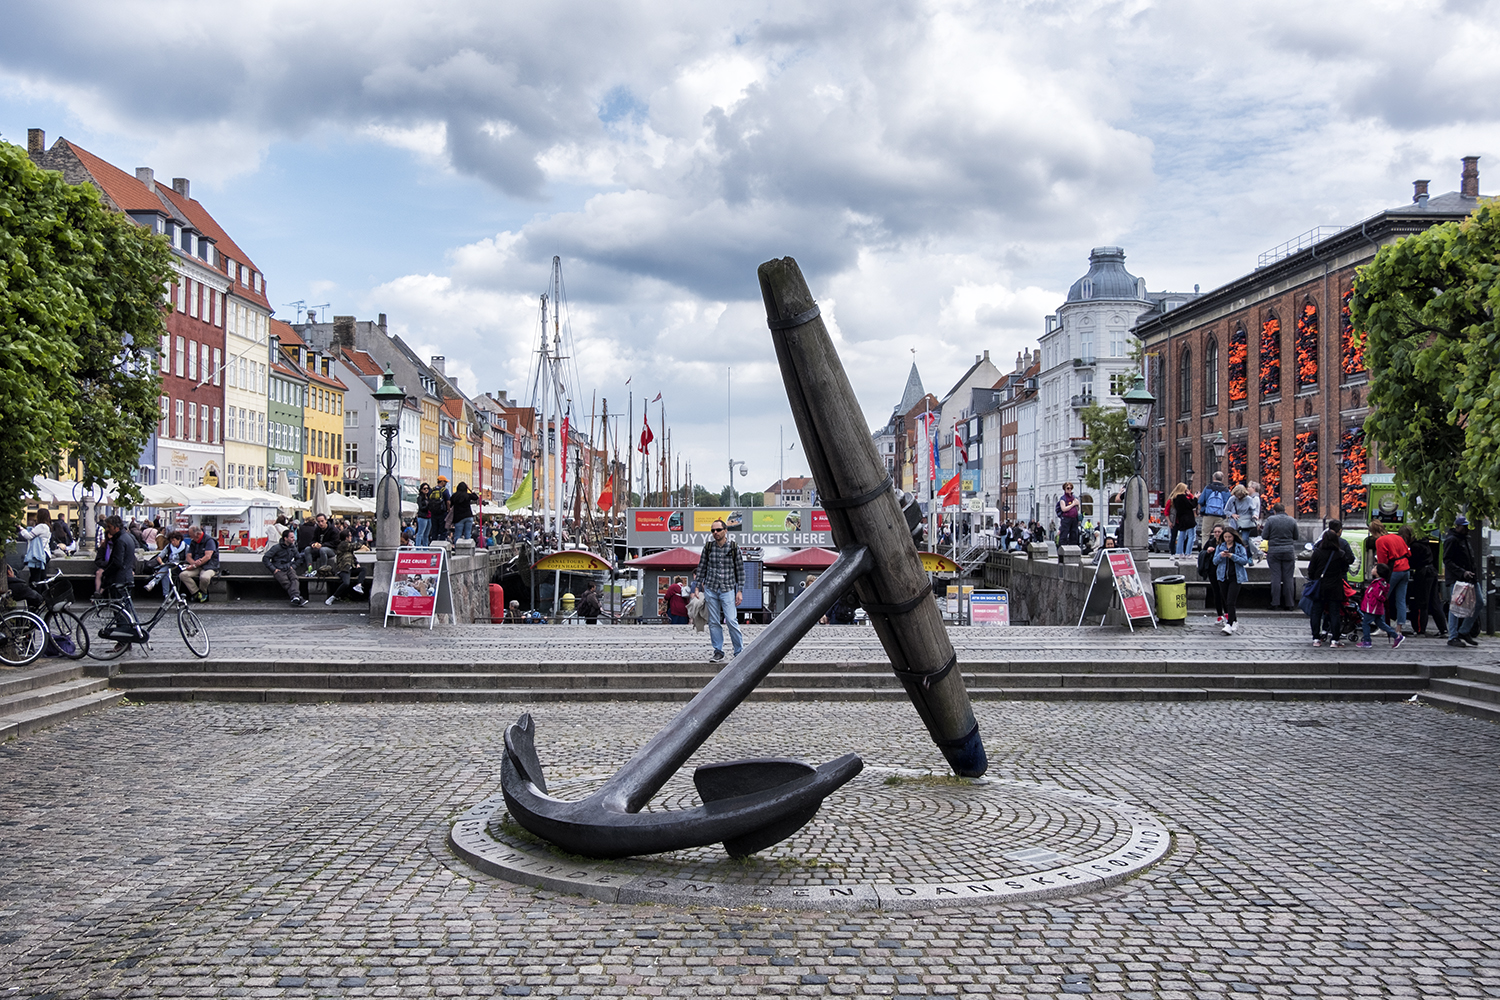 The Memorial Anchor, Nyhavn, Copenhagen